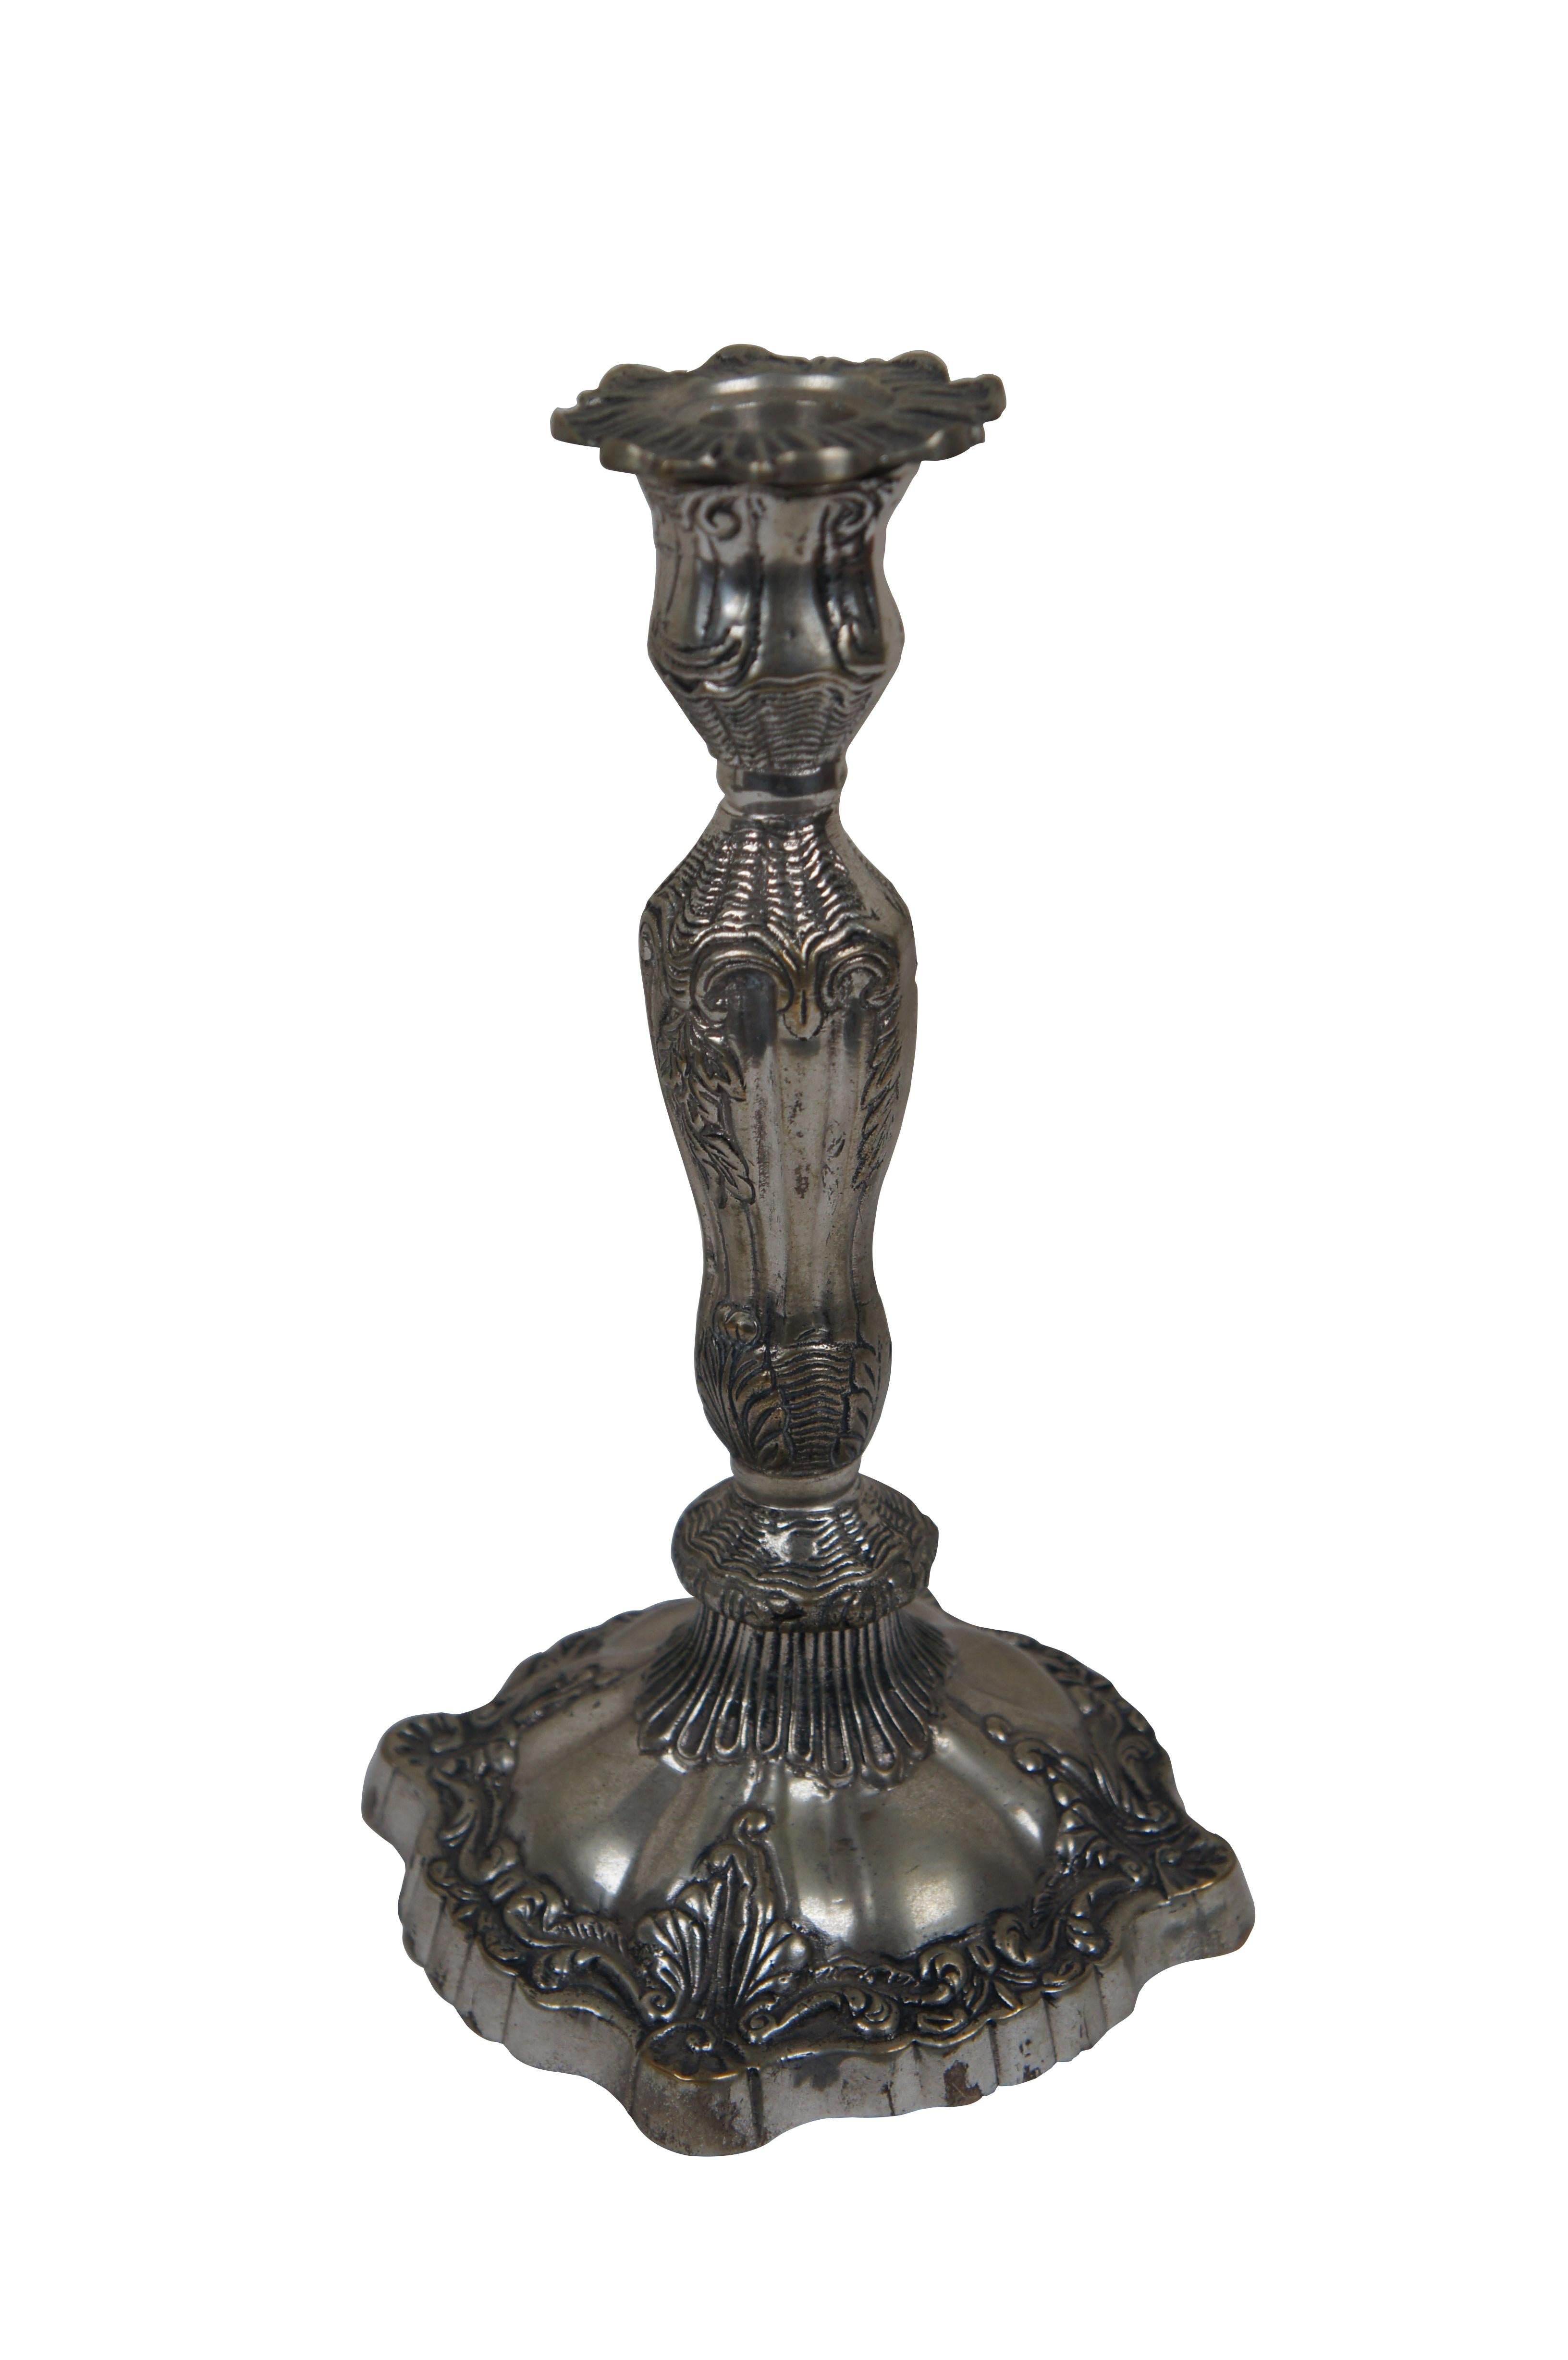 Paar schwere viktorianische Kerzenhalter aus Silberblech aus dem späten 19. bis frühen 20. Jahrhundert mit Blumenblüten-Kerzenbechern und Jugendstil-Muschel- und Blattmotiven. 

Abmessungen:
5,5